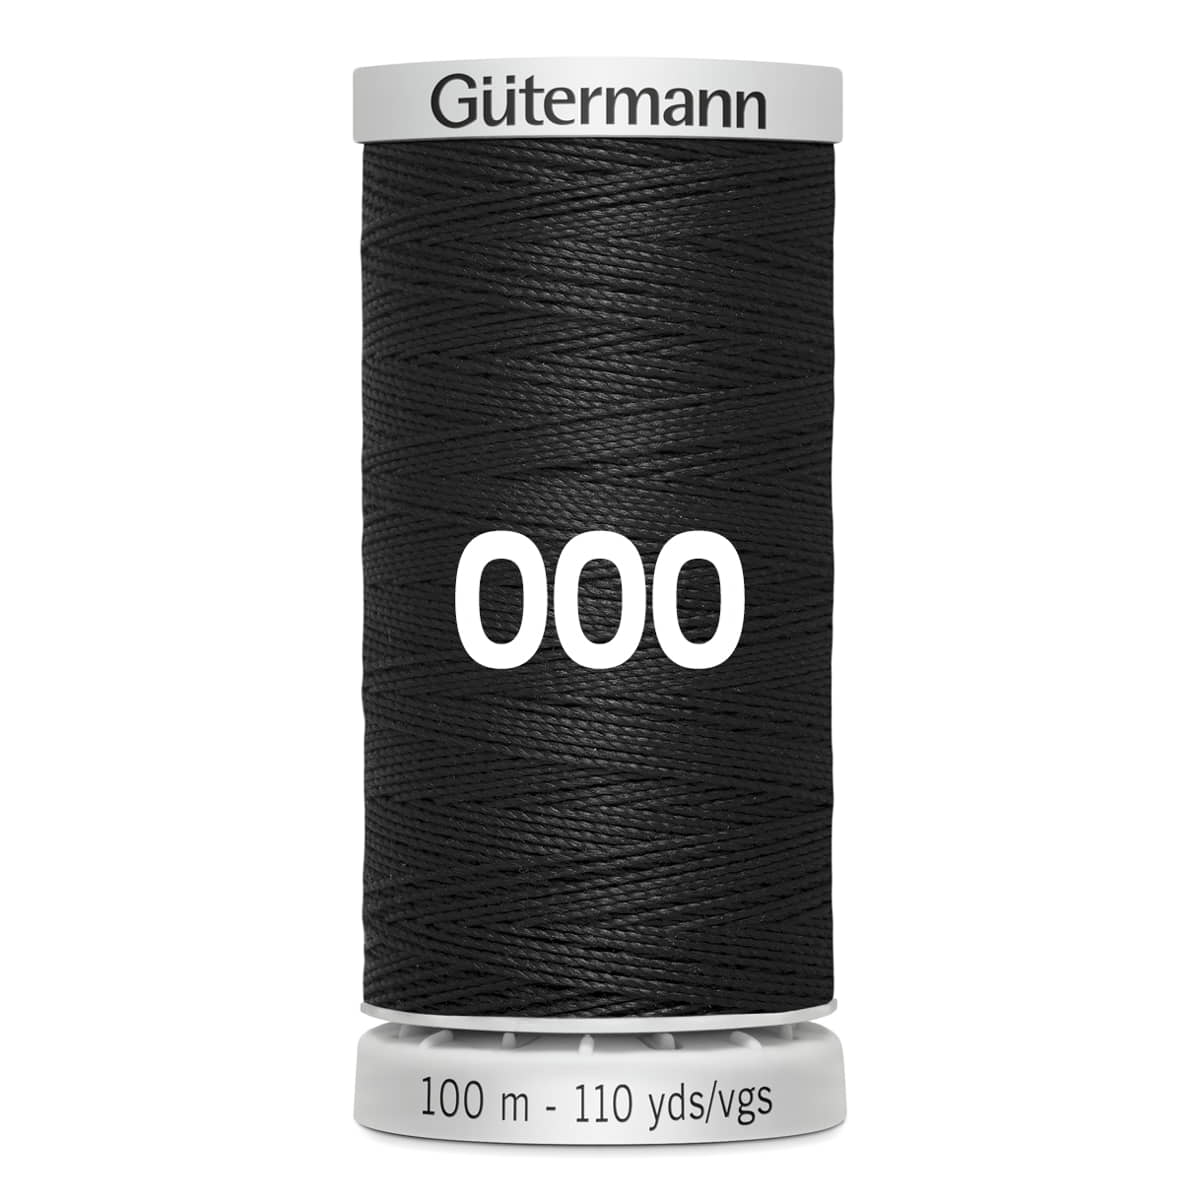 Gutermann super sterk naaigaren | 100m | 000 zwart naaigaren GM-100-SS-M782-000-BLACK 4008015160760